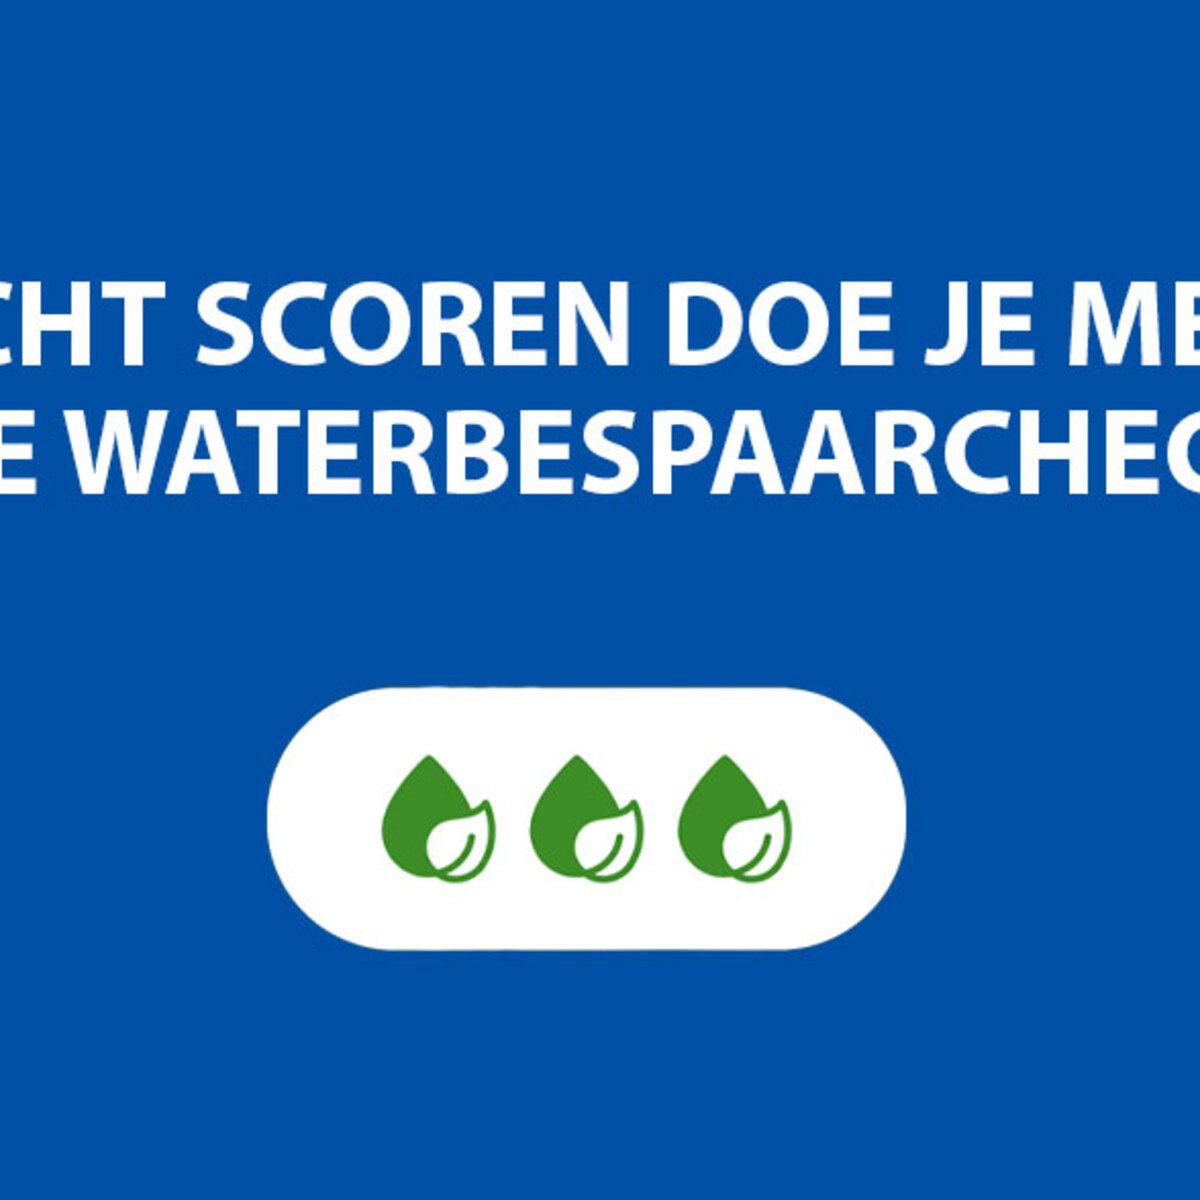 Lot kunst Belastingbetaler Waterbespaarcheck | Brabant Water | bewust. natuurlijk.